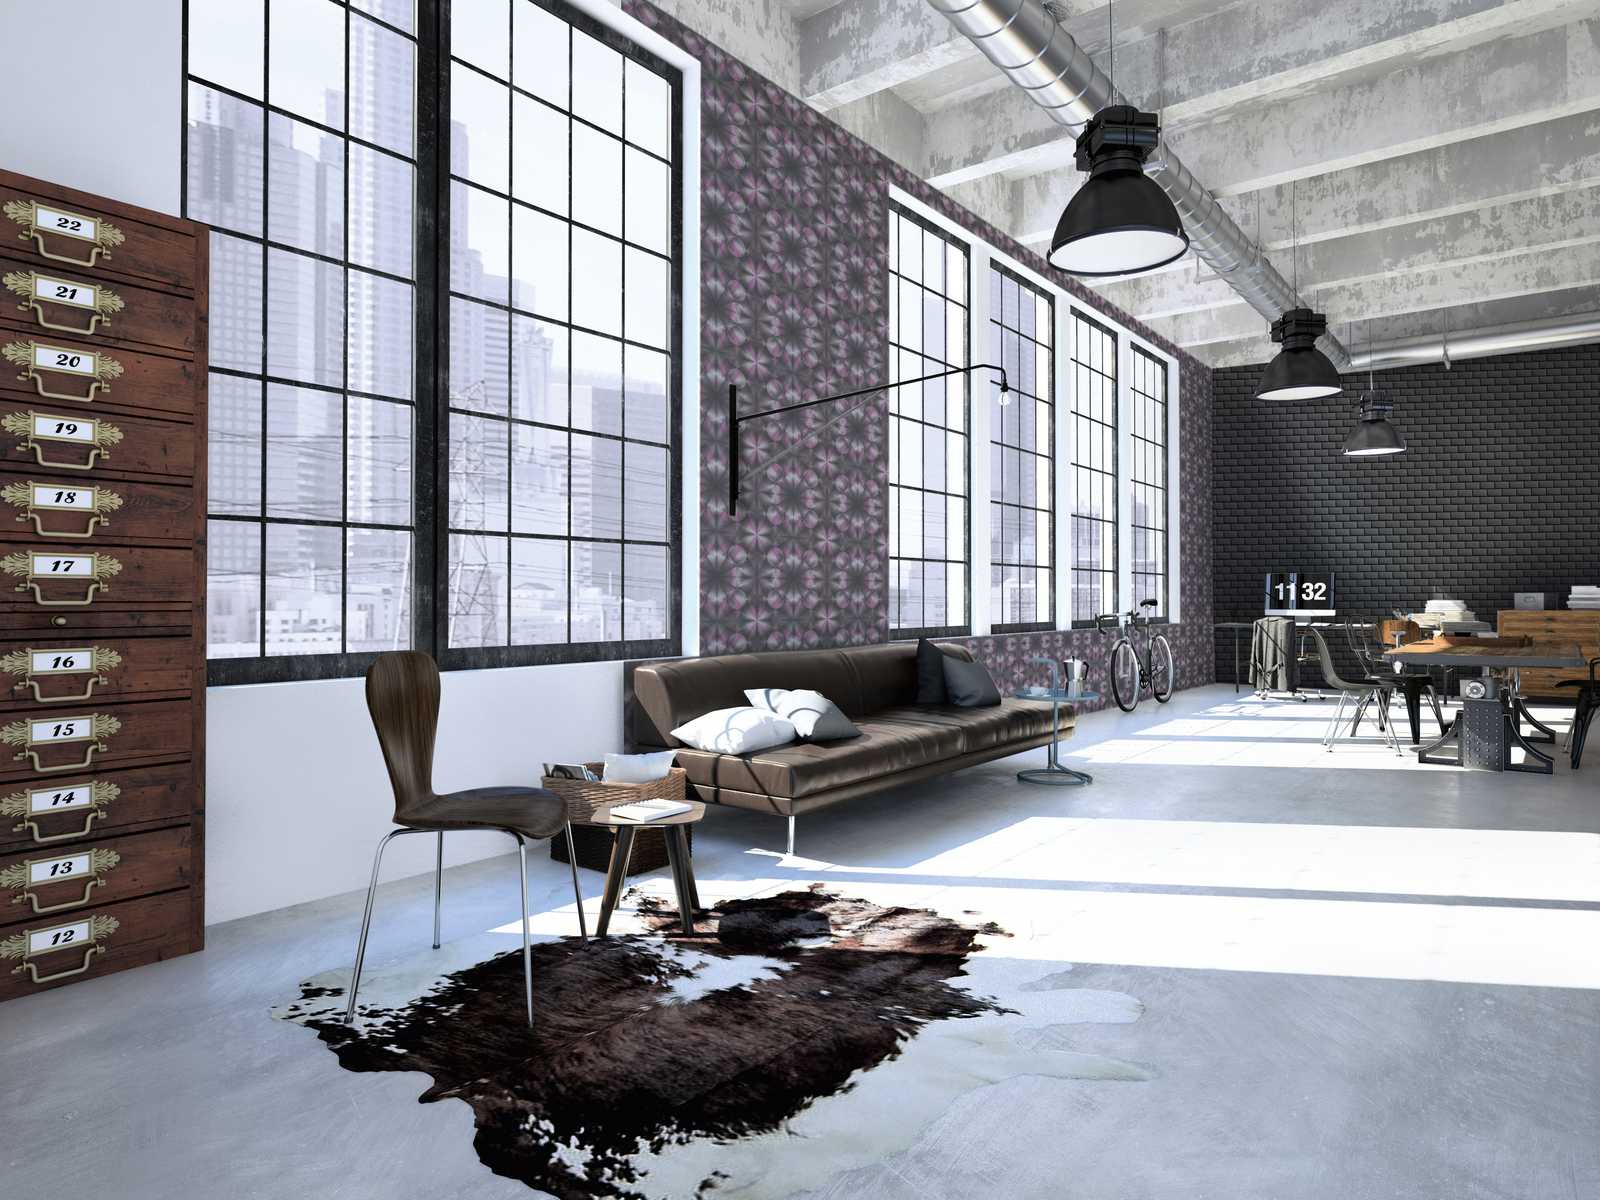             Designbehang met betonlook & grafisch patroon - paars, grijs, zwart
        